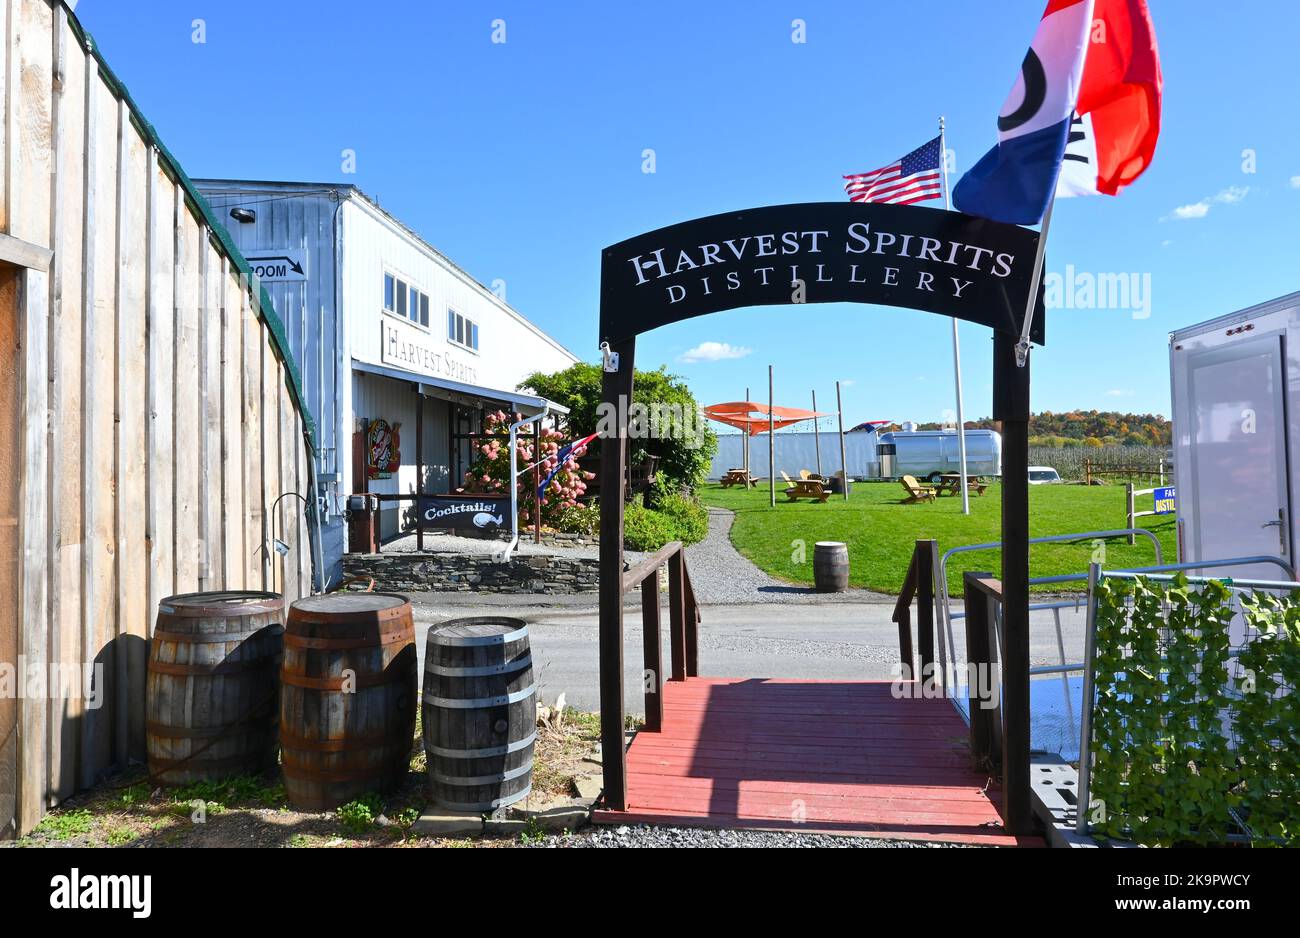 VALATIE, NEW YORK - 19 Okt 2022: Harvest Spirits, die 1. Farm Distillery des Staates New York. Stockfoto